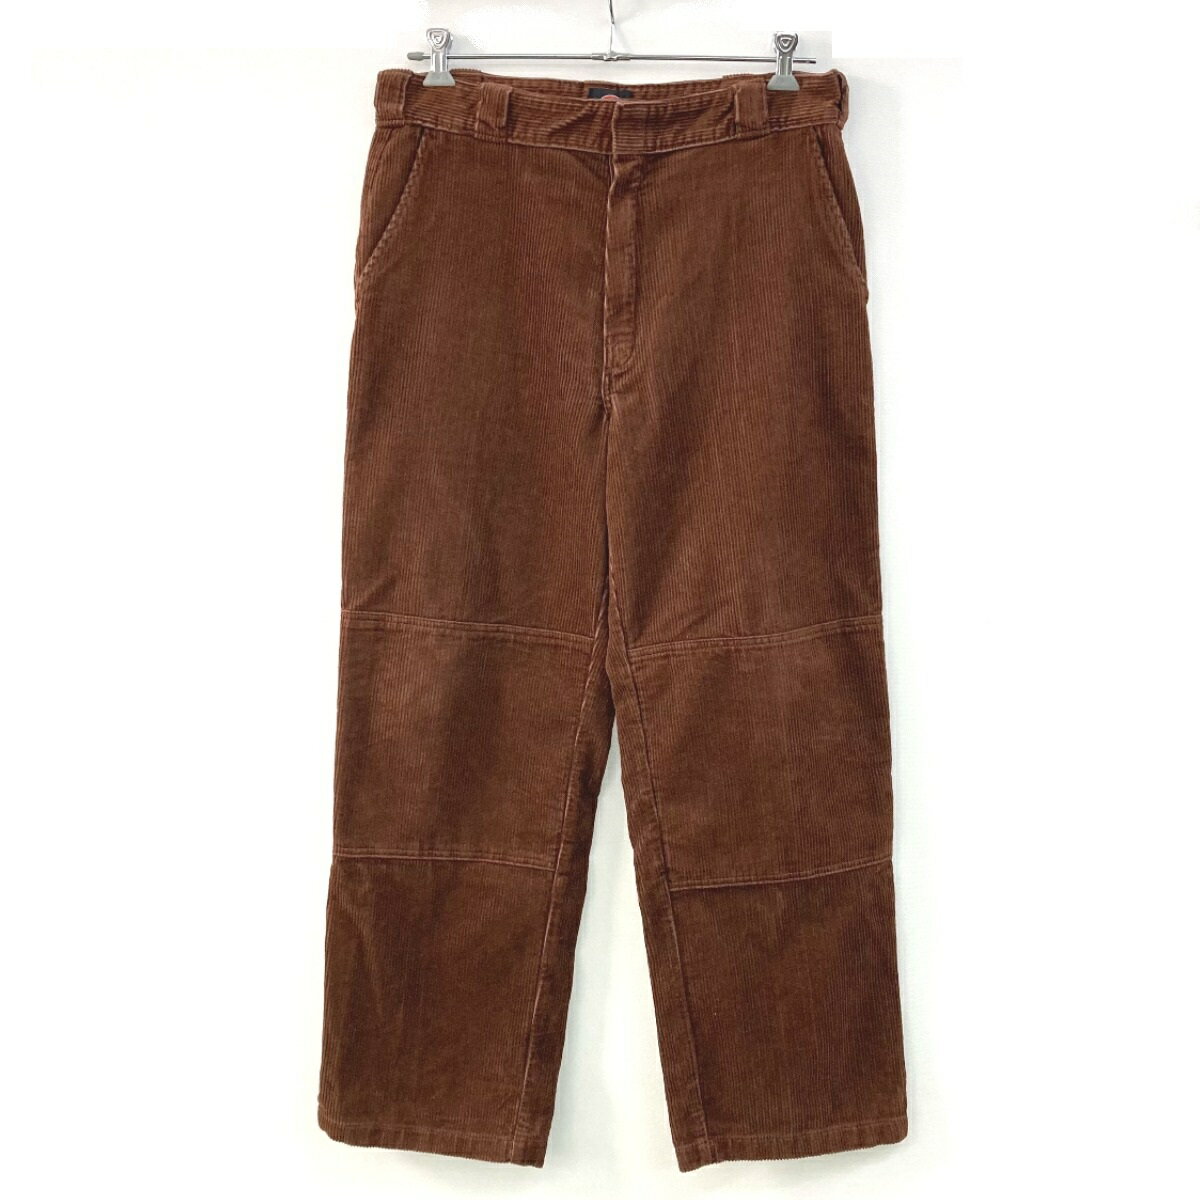 ☆☆【中古】Supreme シュプリーム Dickies Double Knee Corduroy pants ブラウン パンツ サイズ 36 メンズ Aランク